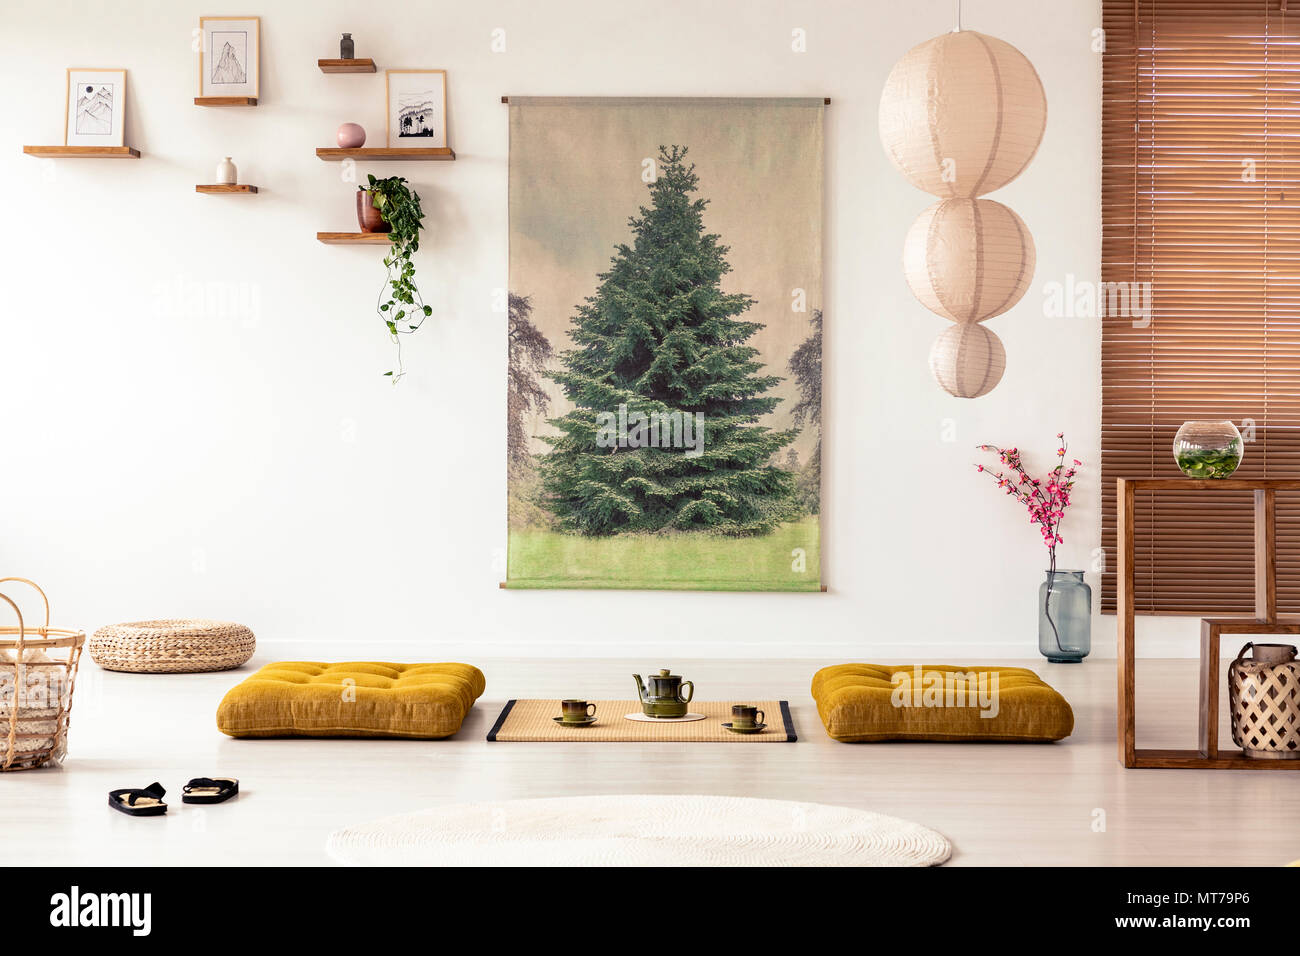 Giapponese sala da pranzo interno con un albero di poster, lampada, cuscini e tatami con pentola e tazze sul pavimento Foto Stock